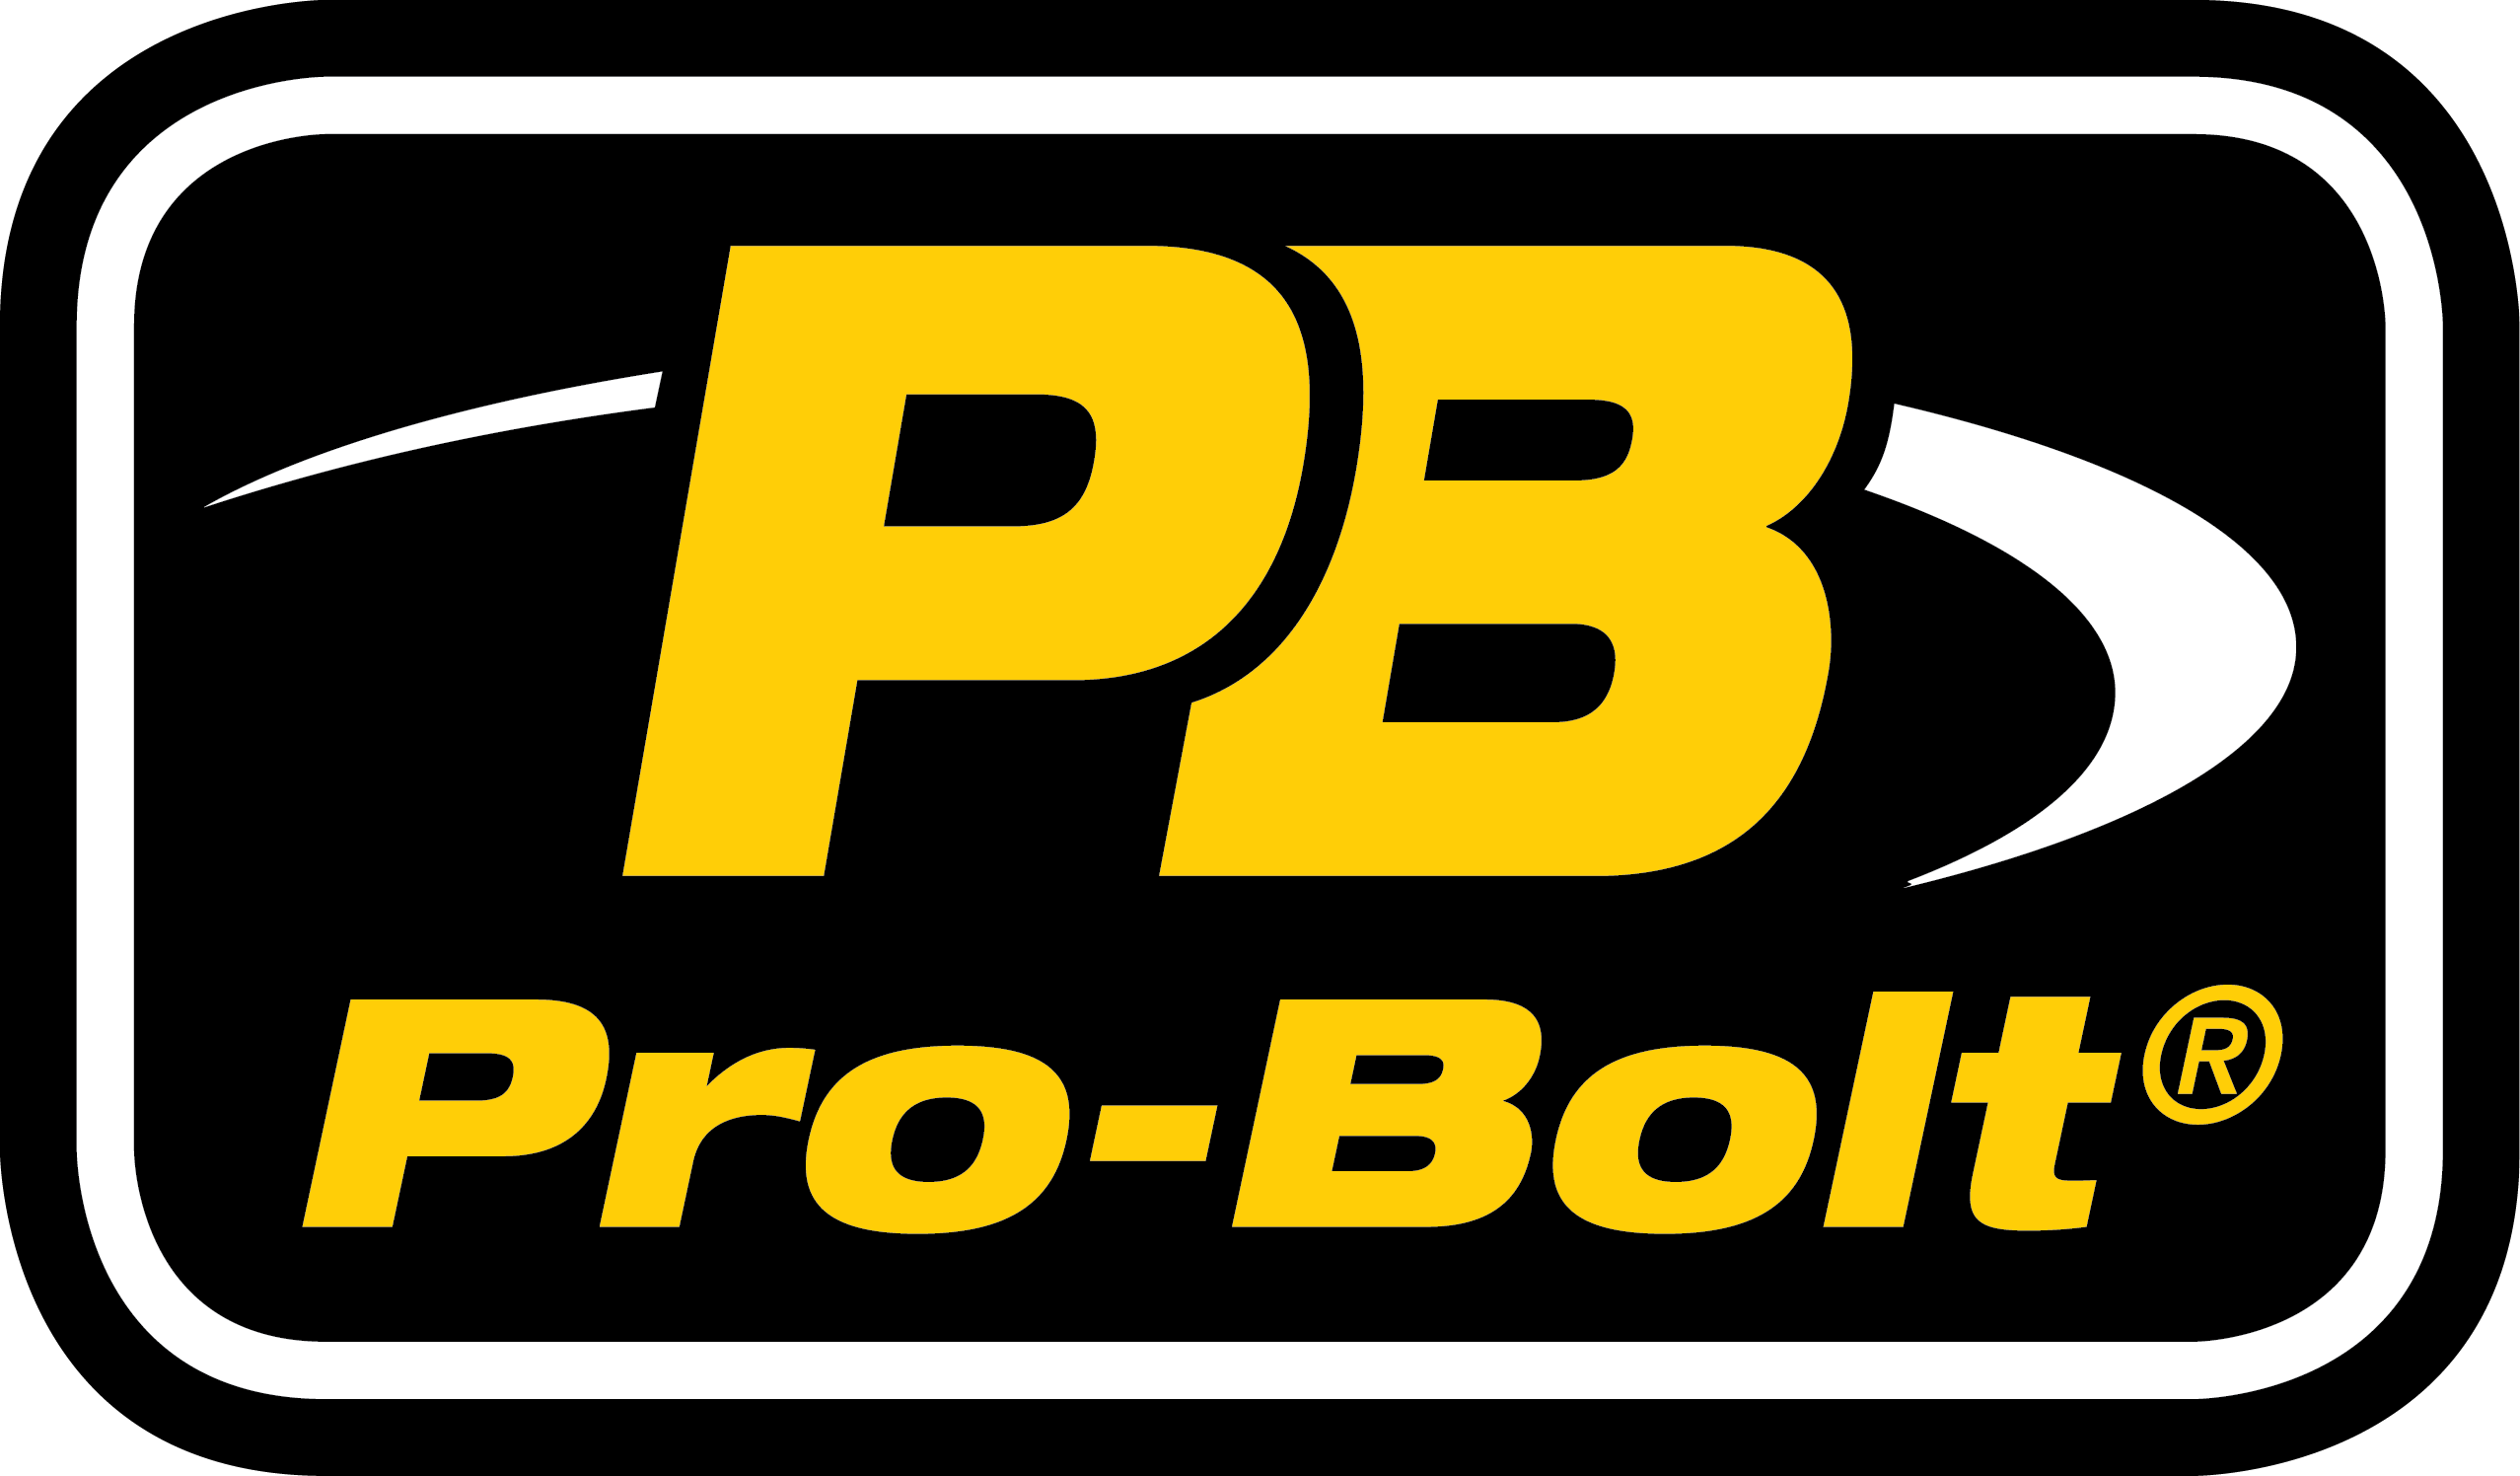 Pro-Bolt